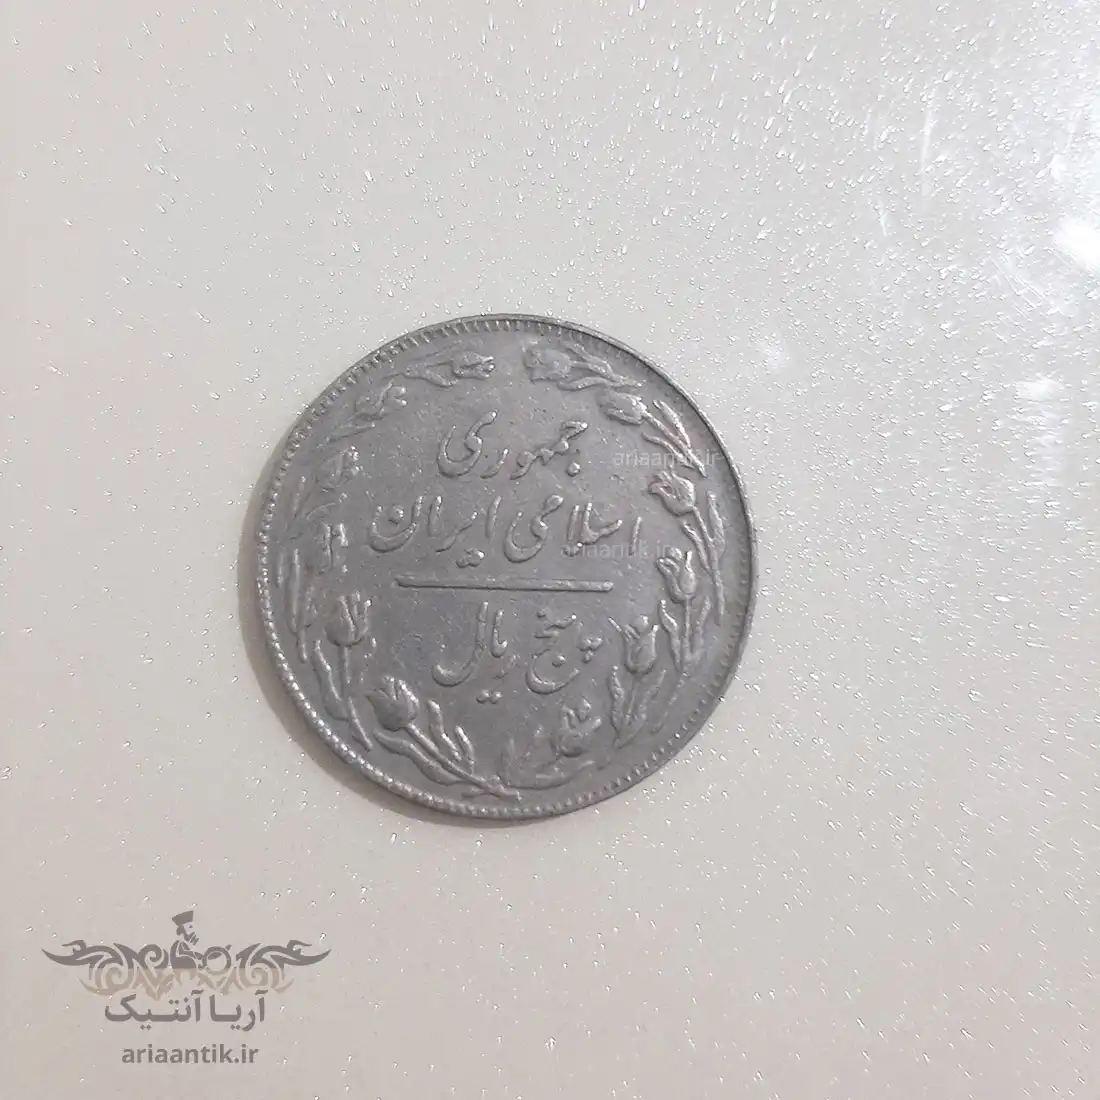  سکه ۵ ریال جمهوری اسلامی